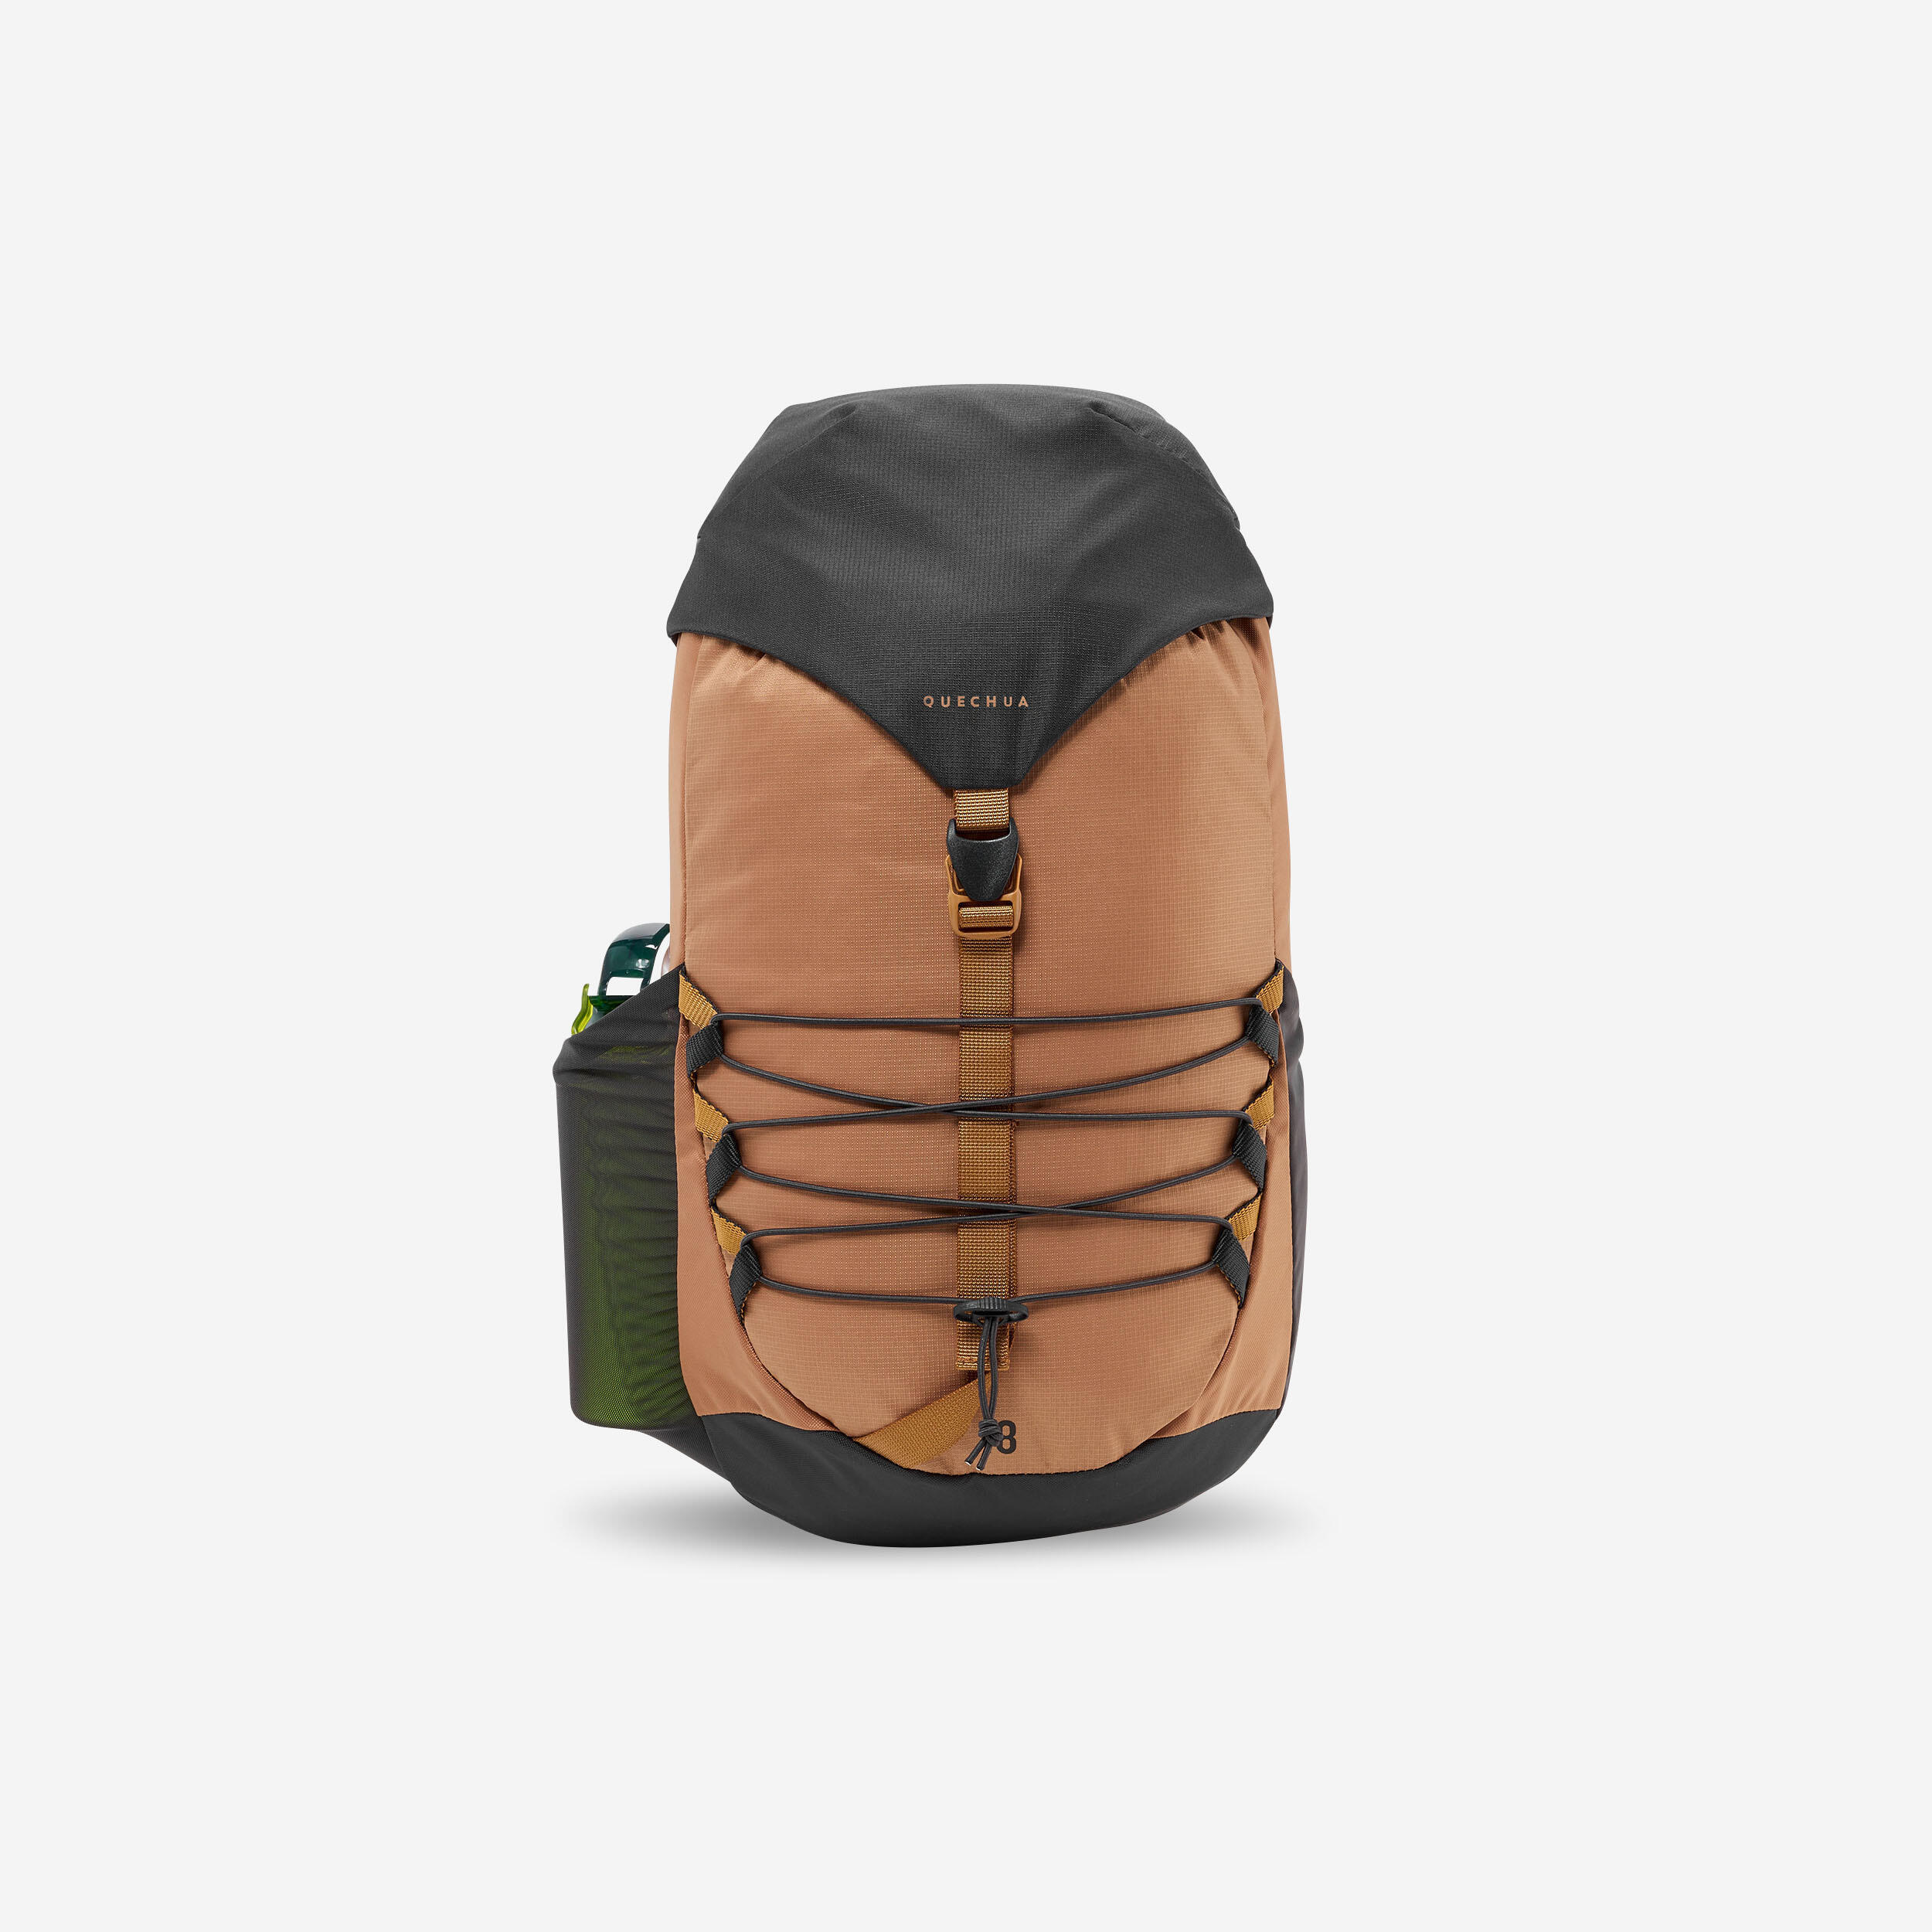 Kids’ Hiking Backpack 18 L - MH 500